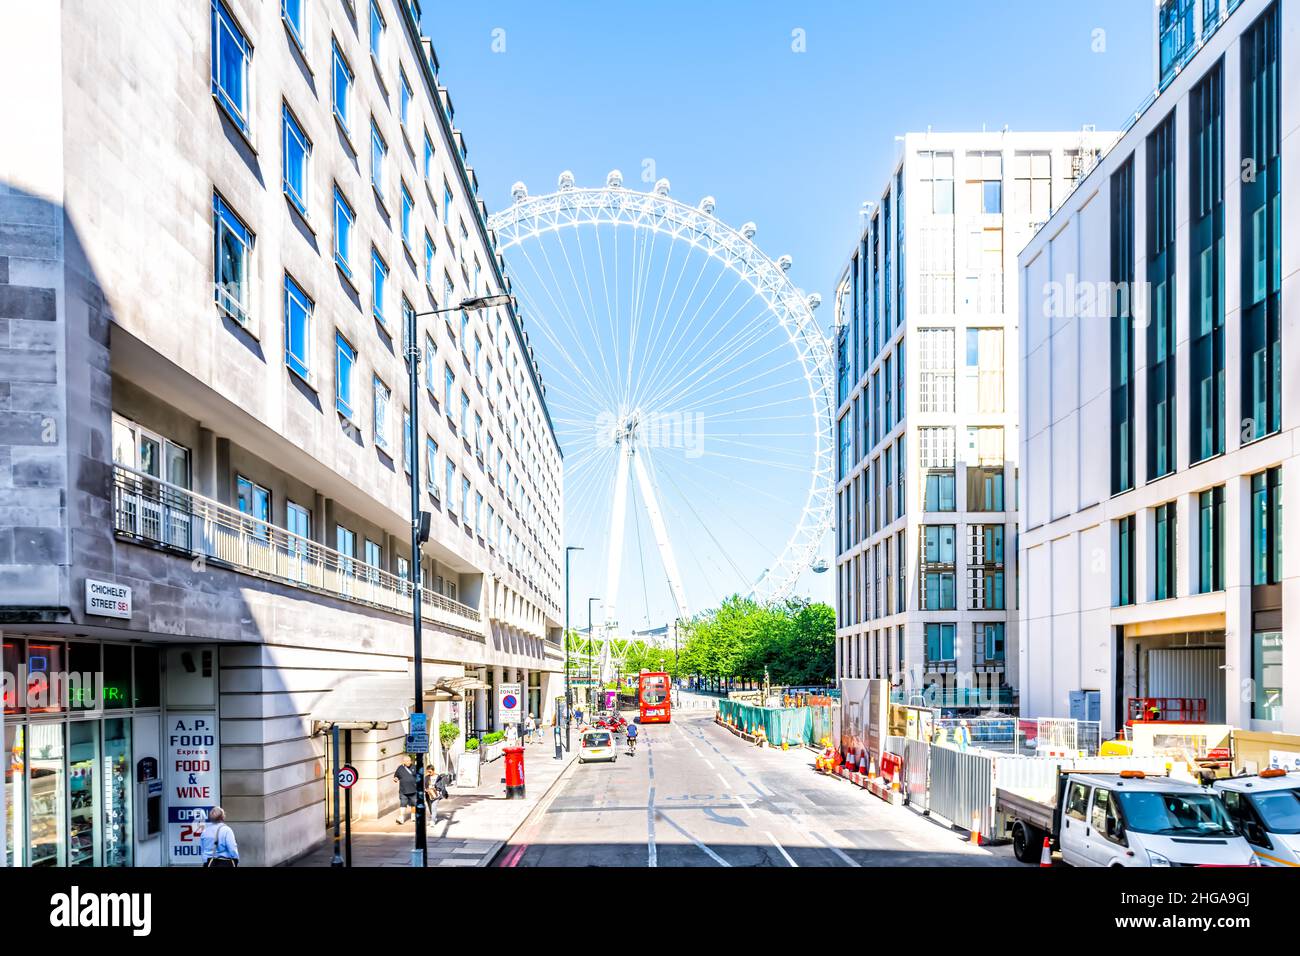 Londres, Royaume-Uni - 22 juin 2018 : rue de la ruelle avec London Eye Millennium Ferris Wheel près des bâtiments du siège de l'hôtel de ville à South Bank l'été Banque D'Images